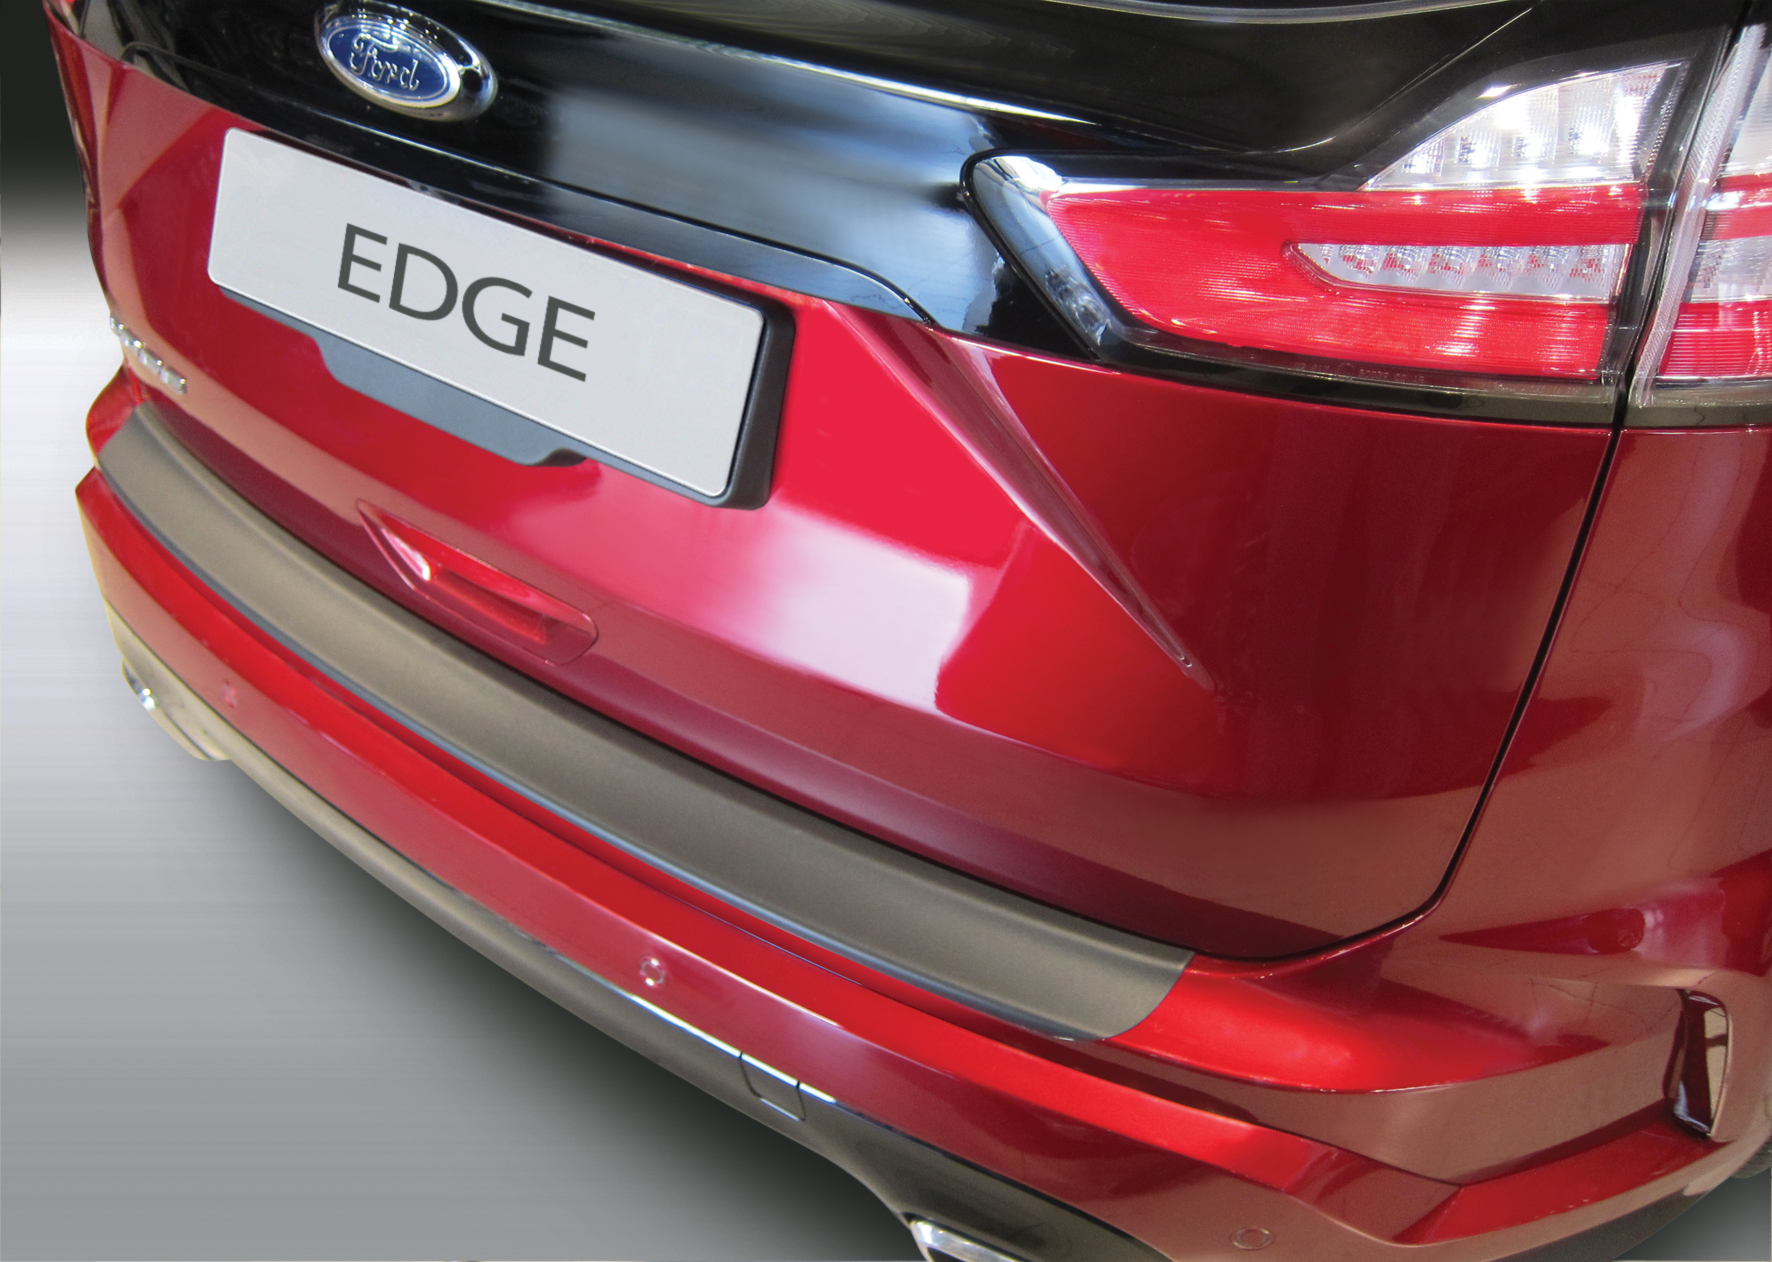 Ladekantenschutz für FORD EDGE - Schutz für die Ladekante Ihres Fahrzeuges